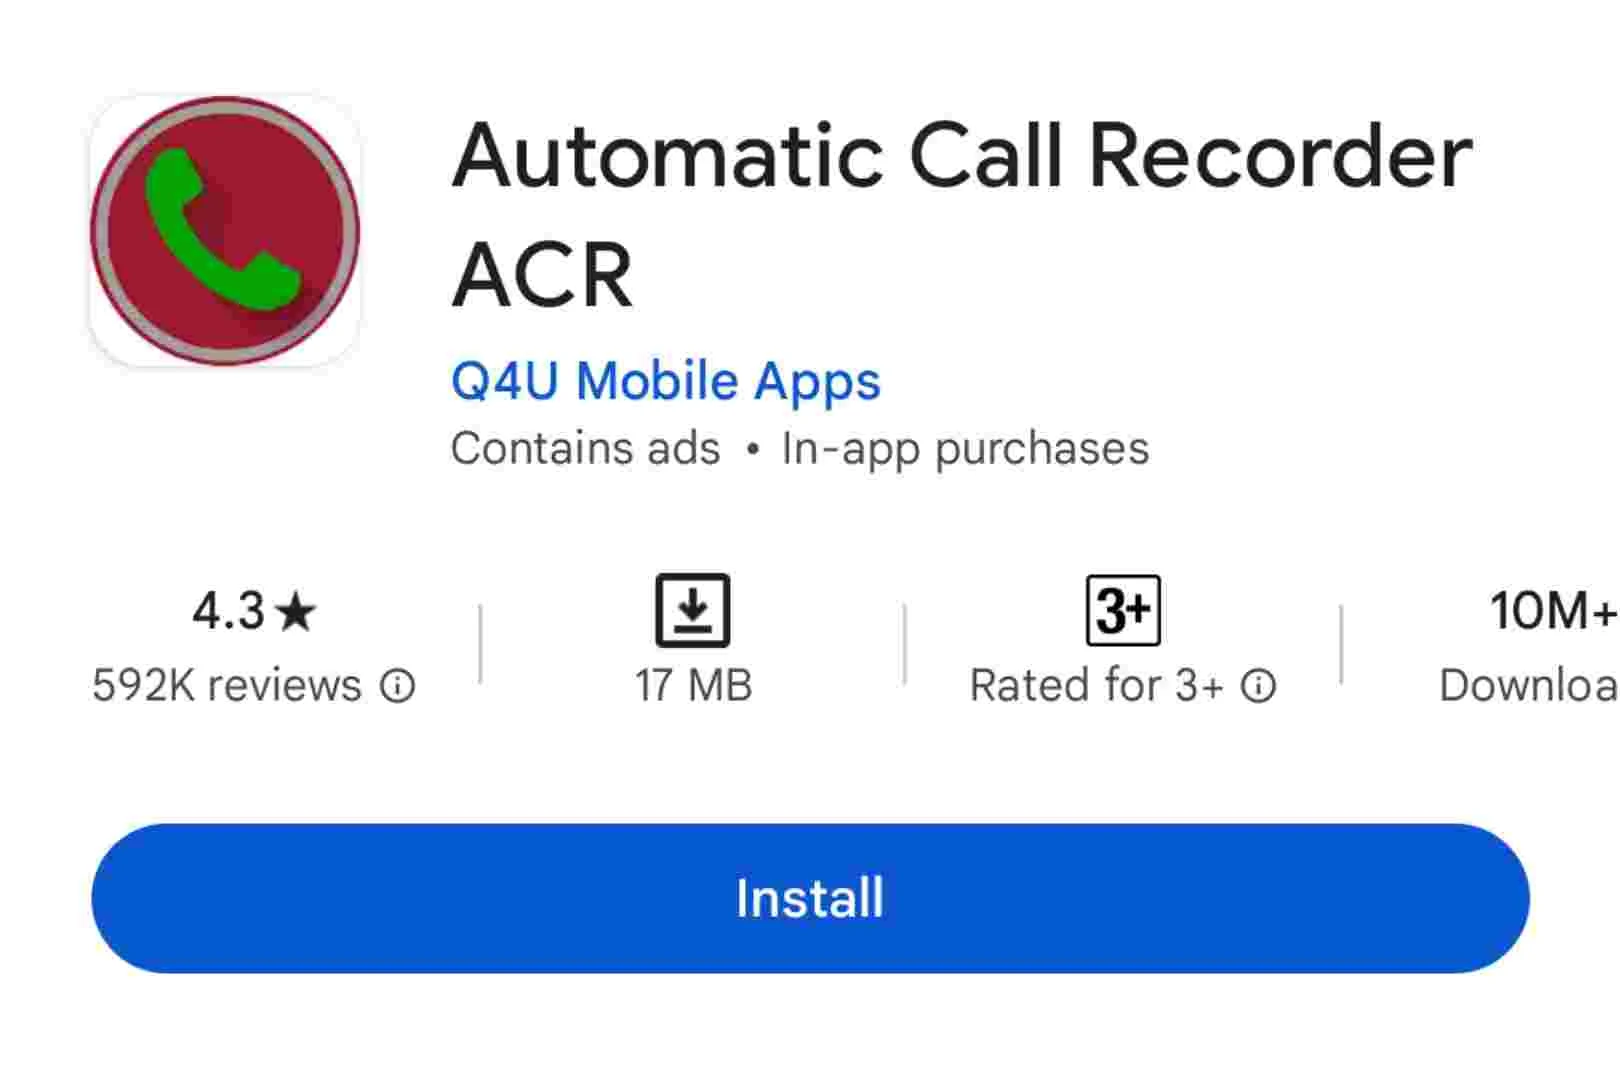 ACR Call Recorder